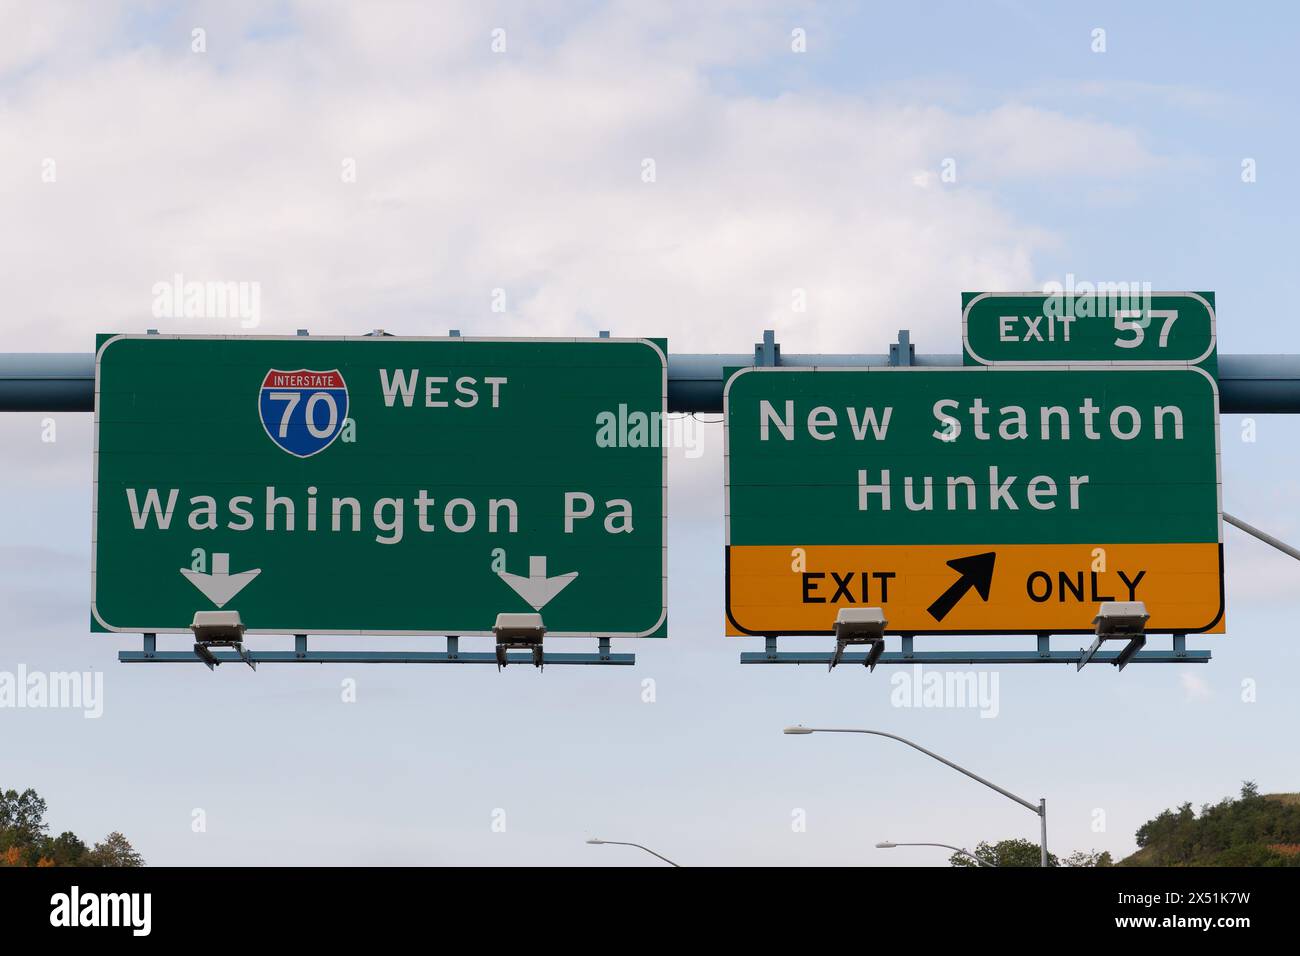 Prenez la sortie 57 pour New Stanton et Hunker, Pennsylvanie sur l'Interstate 70, Dwight D. Eisenhower Hwy, direction ouest vers Washington, Pennsylvanie Banque D'Images